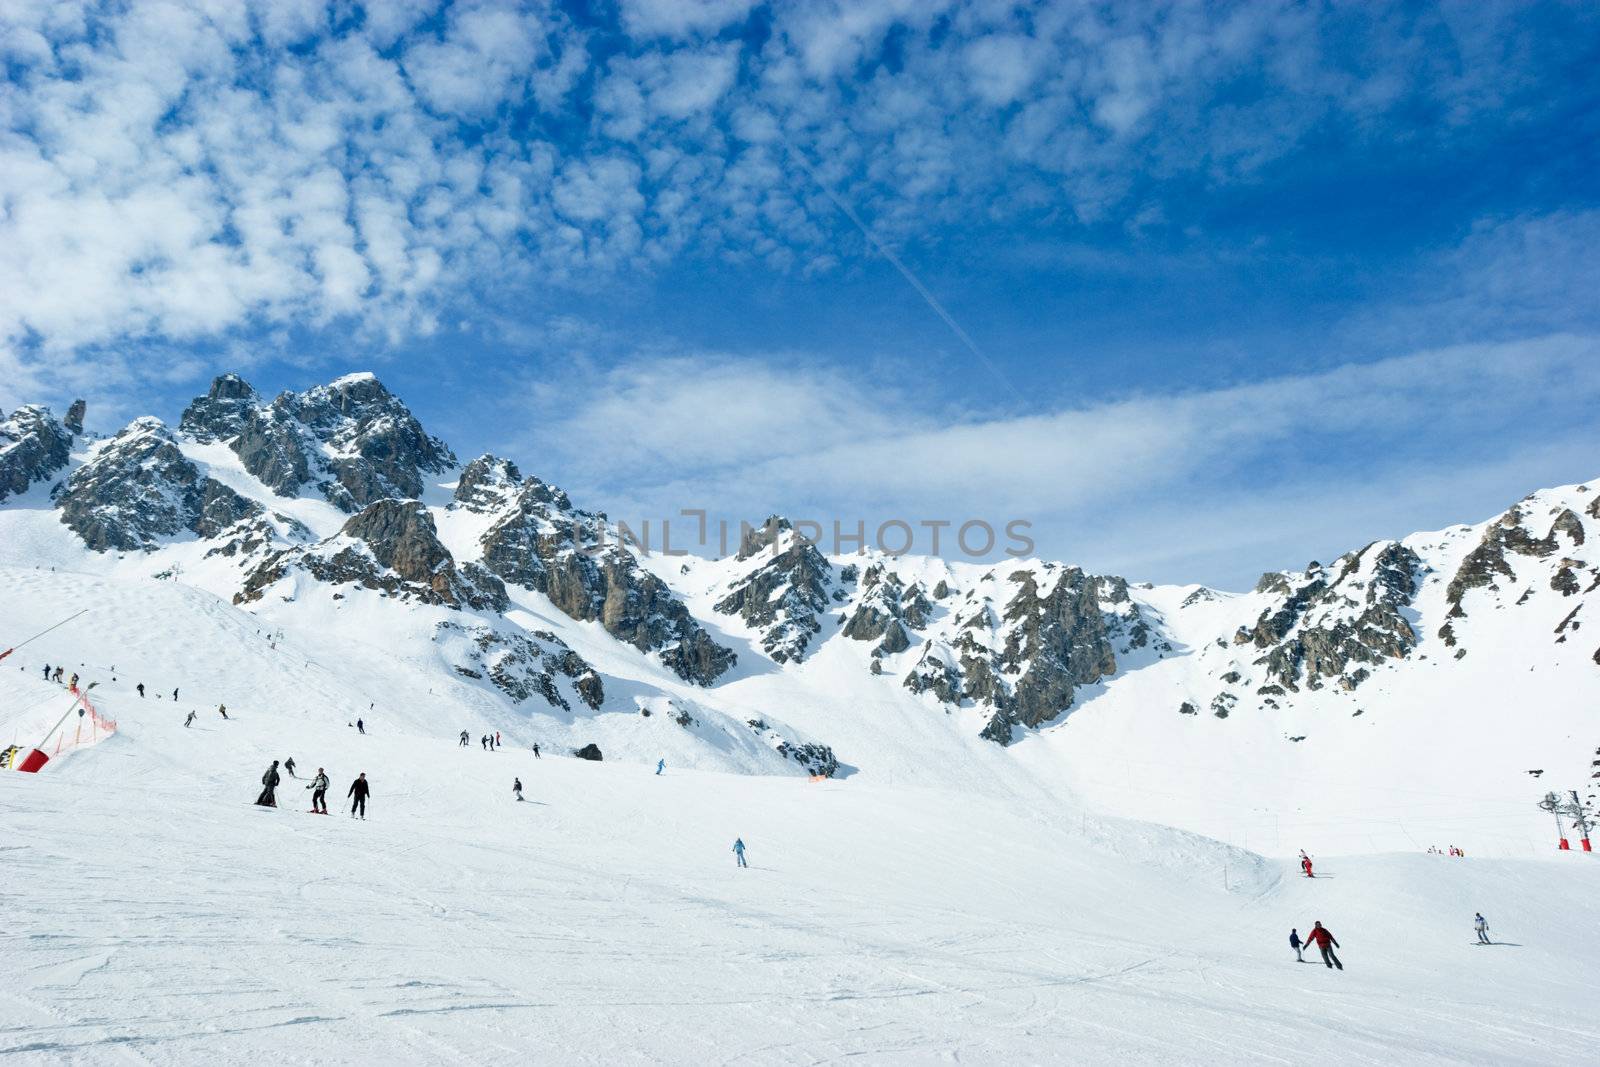 Ski slope by naumoid